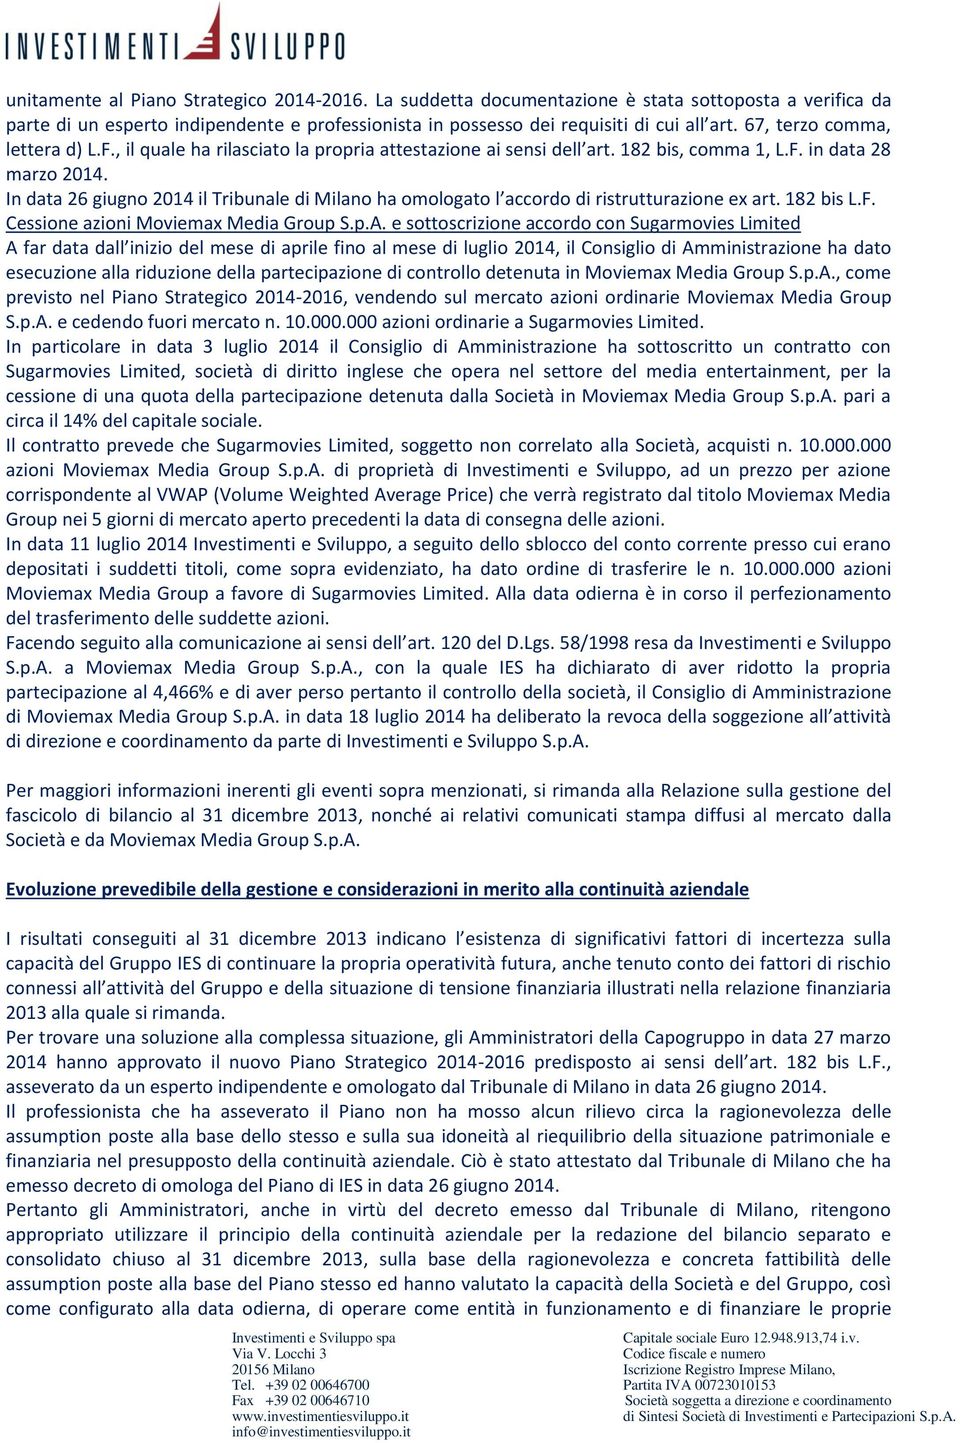 In data 26 giugno 2014 il Tribunale di Milano ha omologato l accordo di ristrutturazione ex art. 182 bis L.F. Cessione azioni Moviemax Media Group S.p.A.